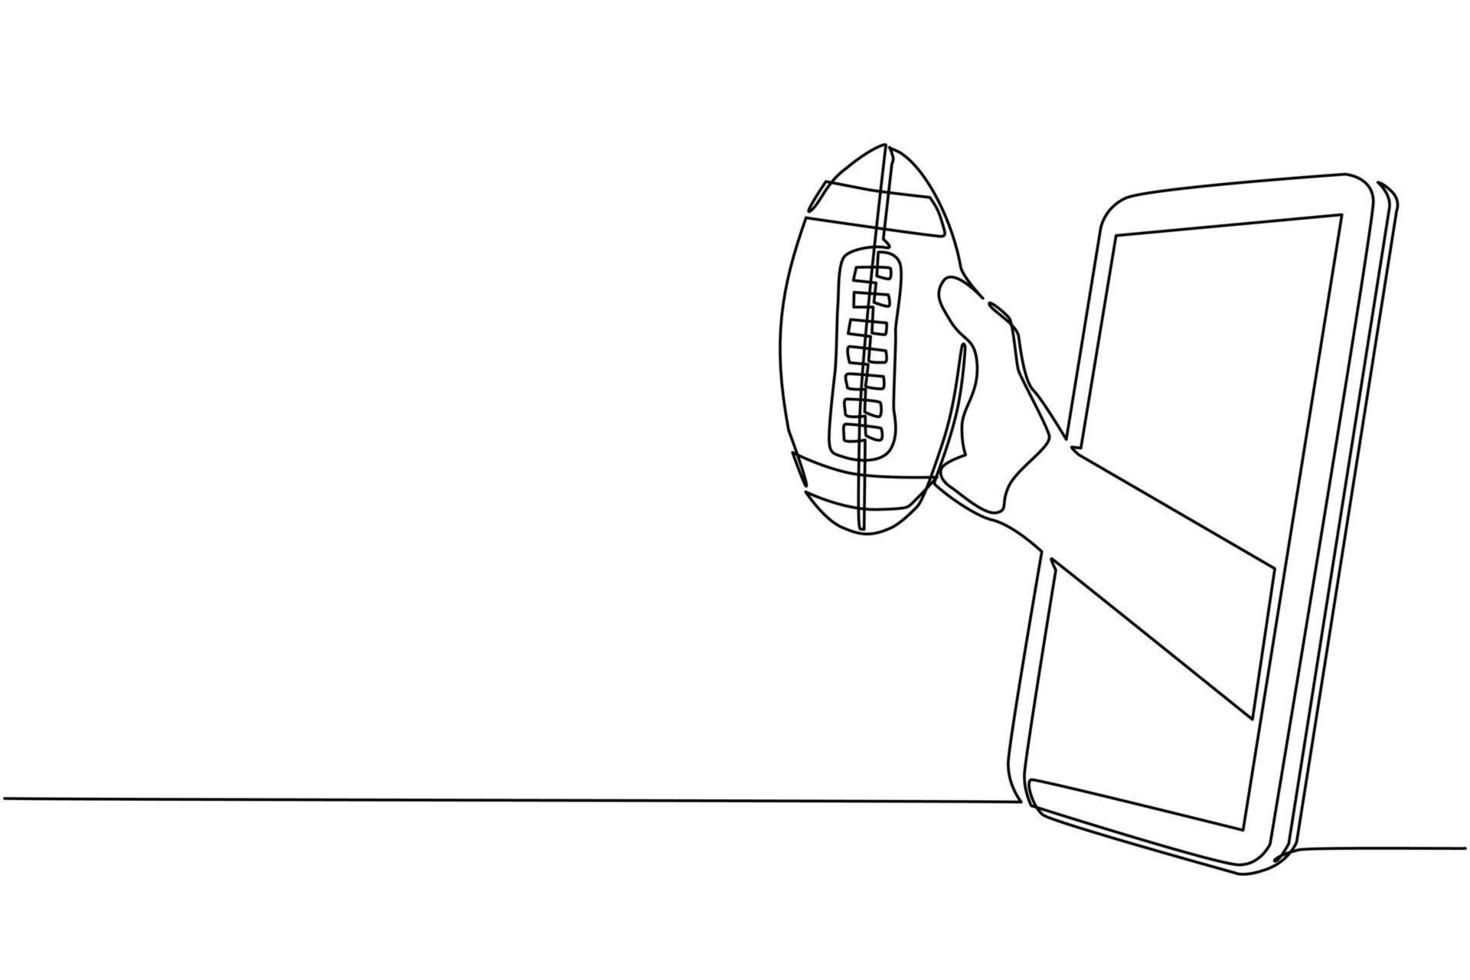 la mano del jugador de dibujo continuo de una línea sostiene la pelota de fútbol americano a través del teléfono móvil. teléfono inteligente con aplicación de fútbol americano. campeonato de transmisión de deportes móviles. vector de diseño de dibujo de una sola línea